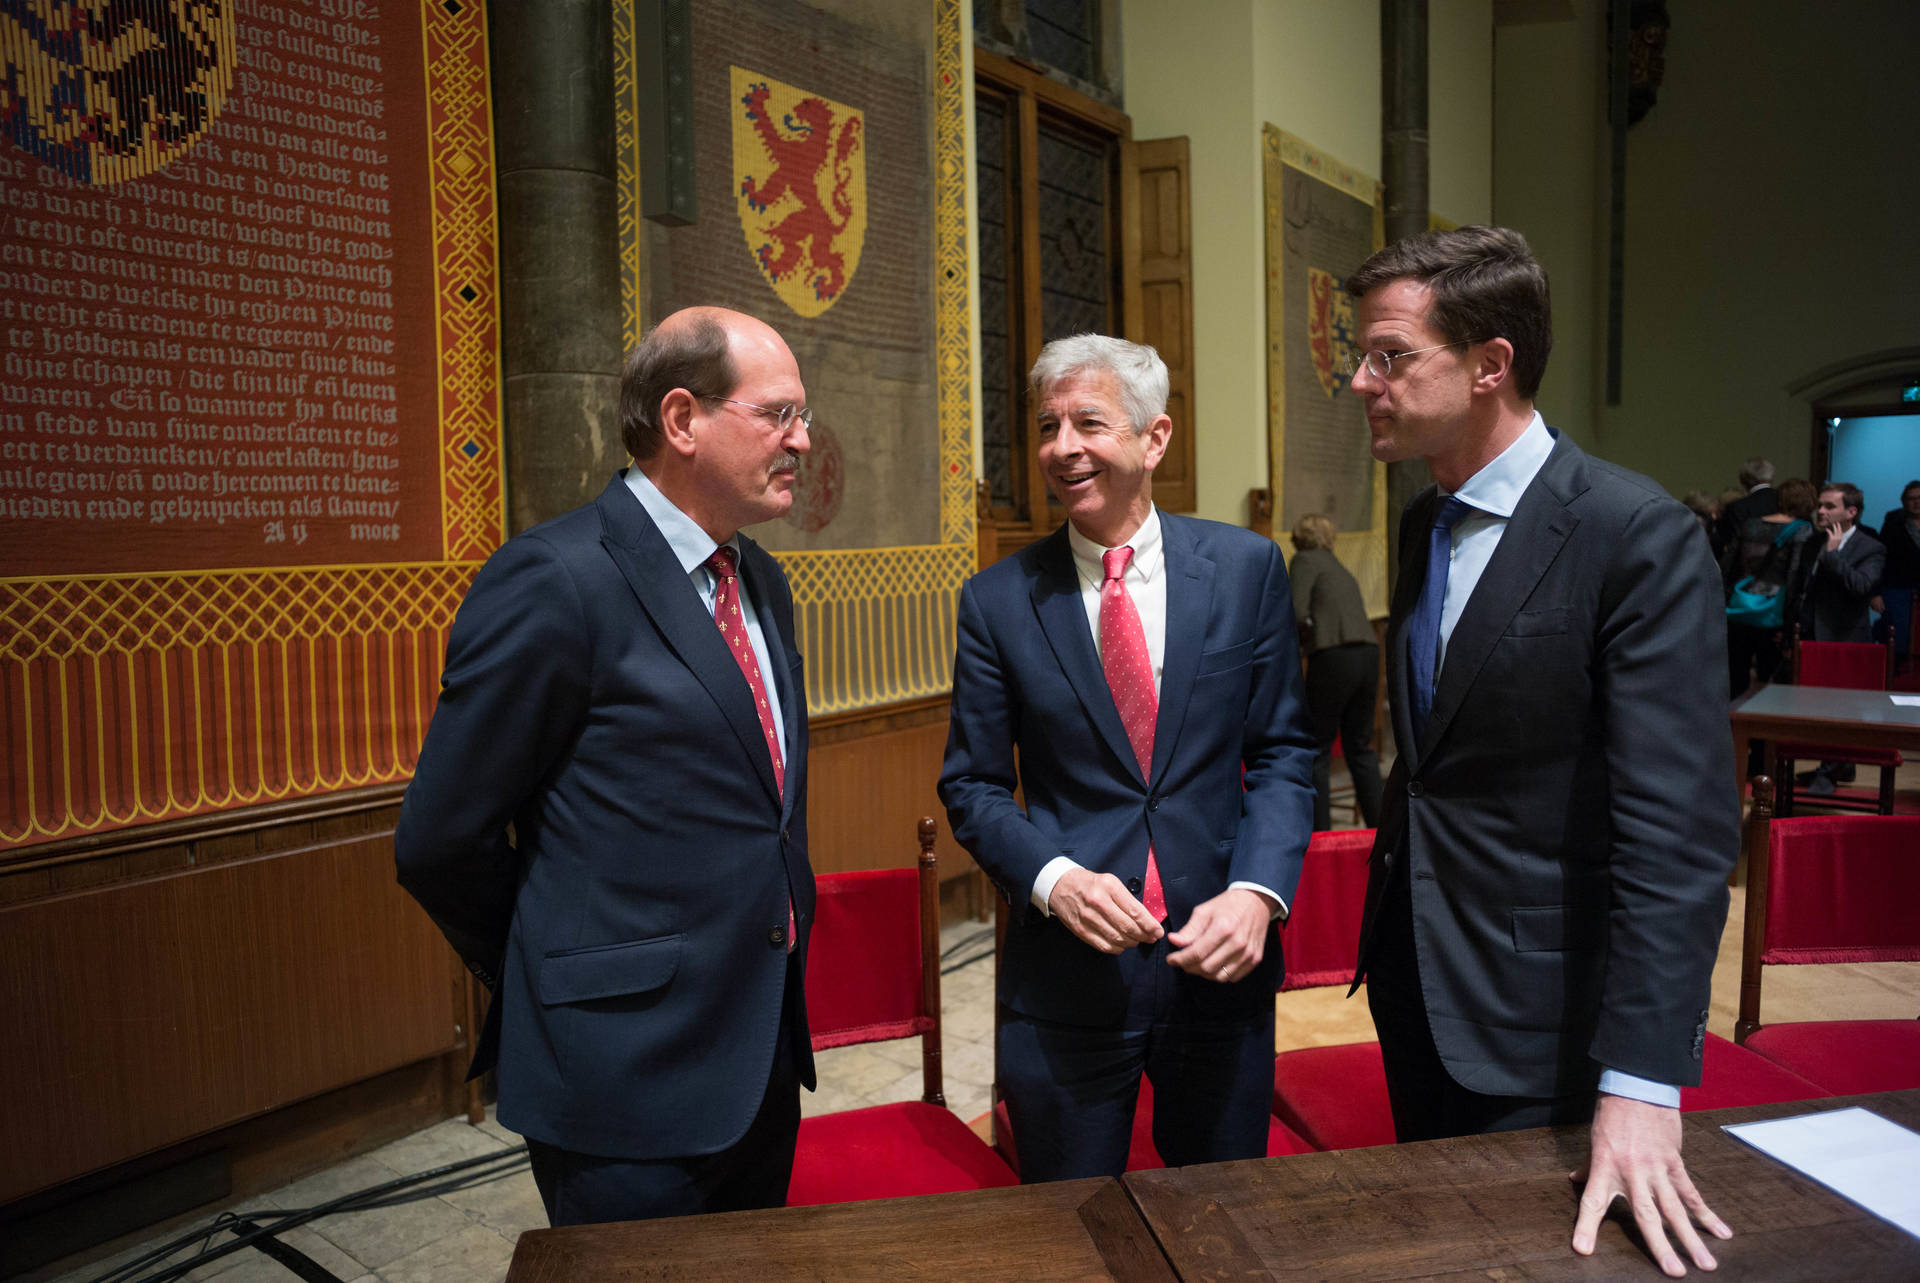 Commissievoorzitter Engels met Minister Plasterk en Minister-President Rutte